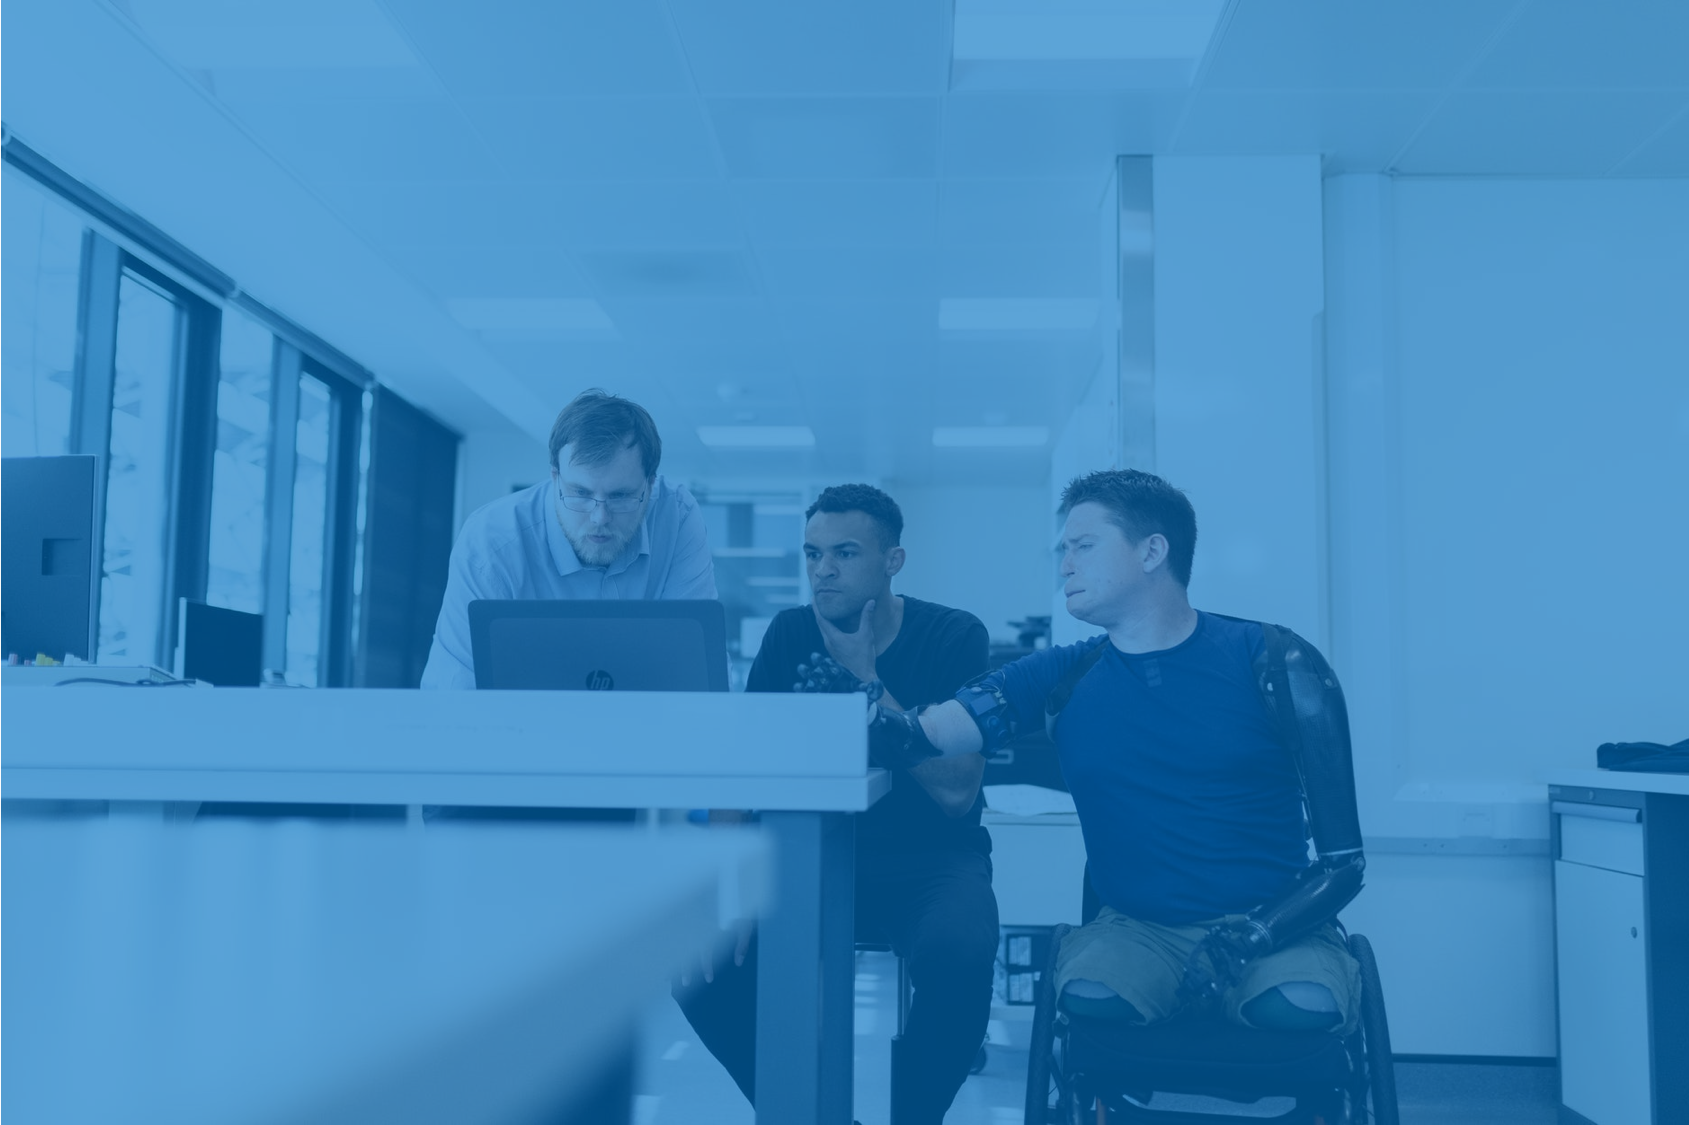 Na imagem aparecem 3 colaboradores em uma mesa de trabalho, olhando para o computador. Um deles é uma pessoa com deficiência, usuário de cadeira de rodas, reforçando o tema central do post.